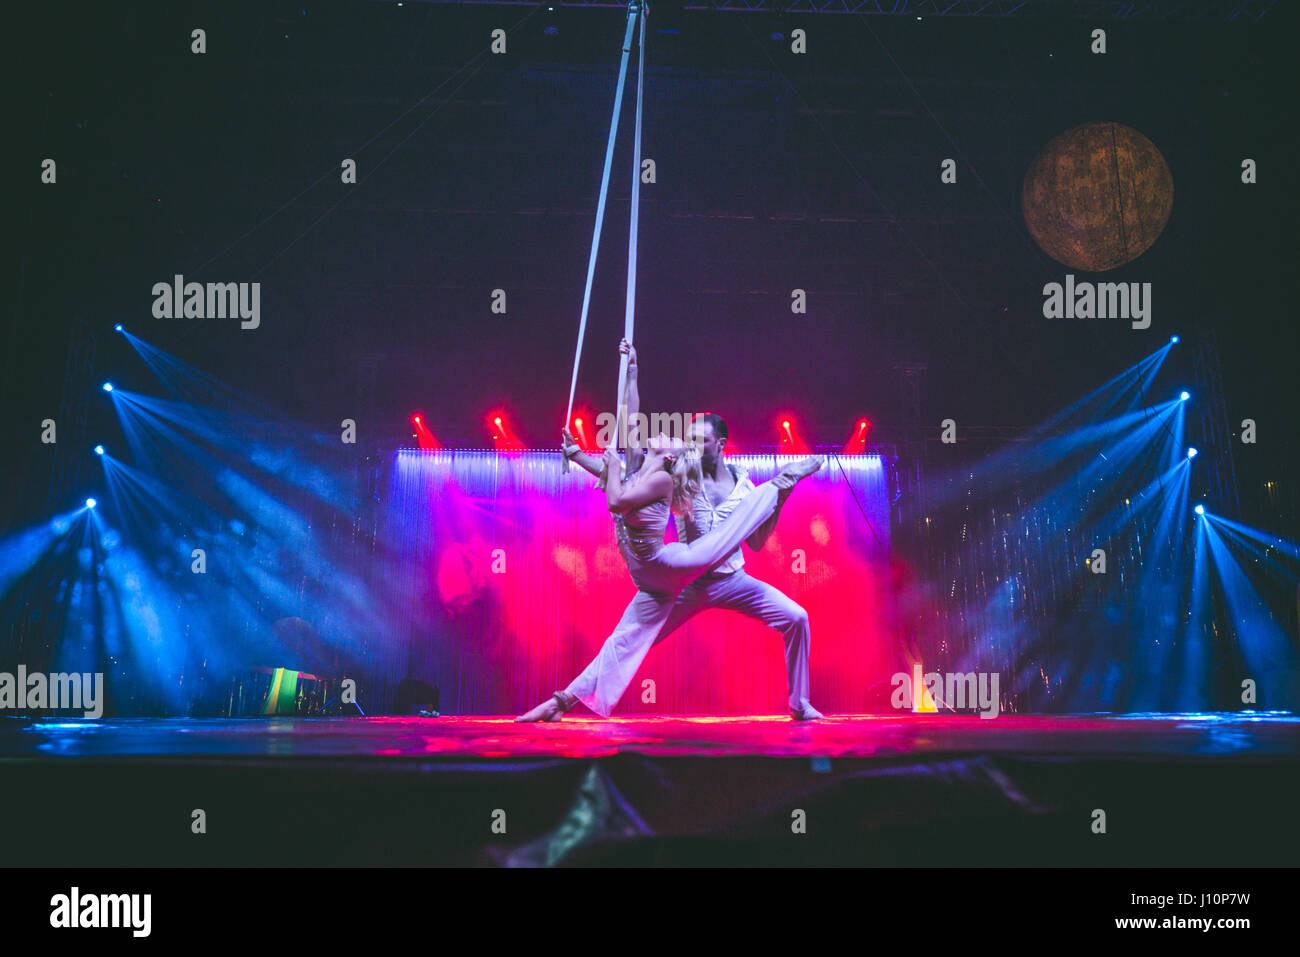 15. April 2017: Dmitri Grigorov und Anastasia Vashchenko (auch bekannt als Flight of Passion) in "Alis - Le Cirque mit der weltweit Top-Performern" Leben in Turin bei der Pala Vela für ihre erste Tour 2017 Datum Foto: Cronos/Alessandro Bosio Stockfoto